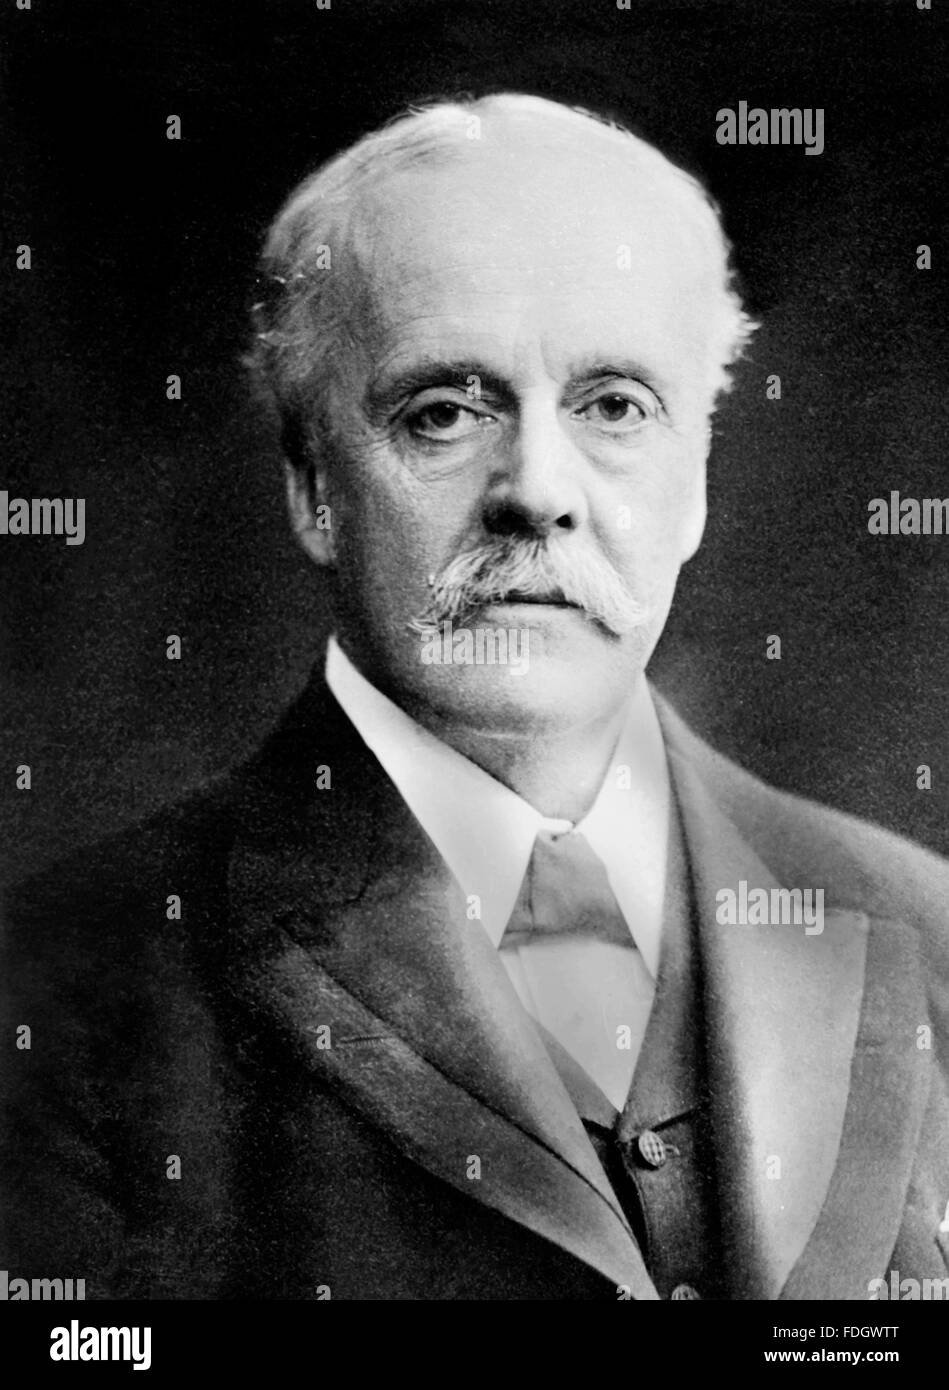 Arthur Balfour. Retrato del ex Primer Ministro británico Lord Balfour c.1915 Foto de stock